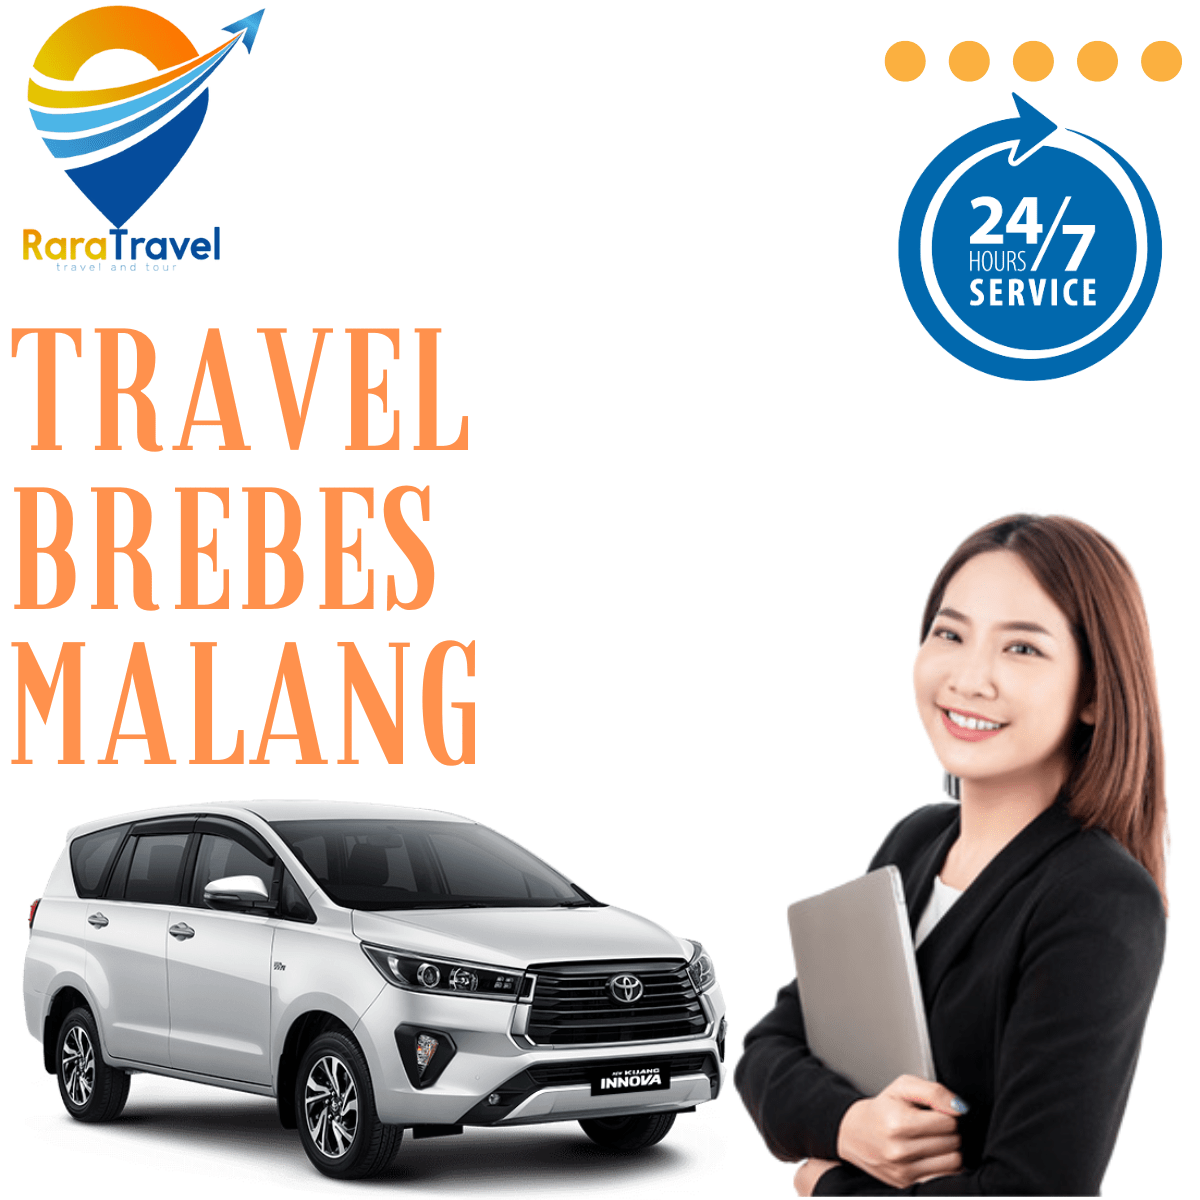 Travel Brebes Malang